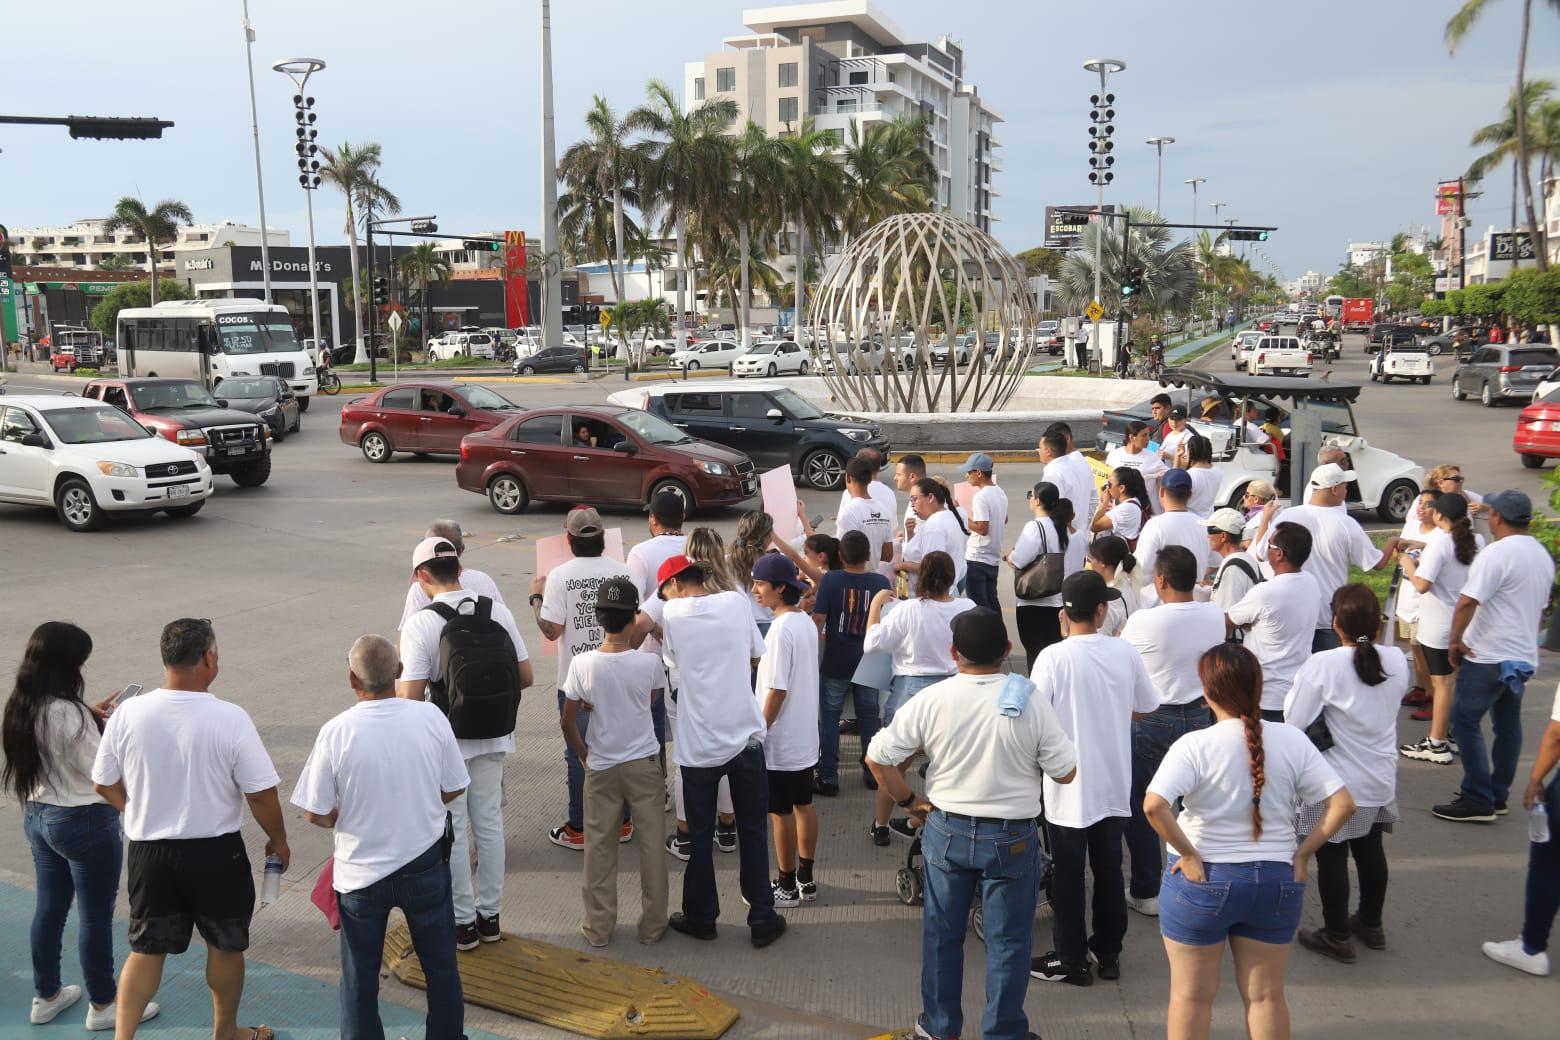 $!Protestan en Mazatlán para exigir que aparezca David, desaparecido el 19 de julio